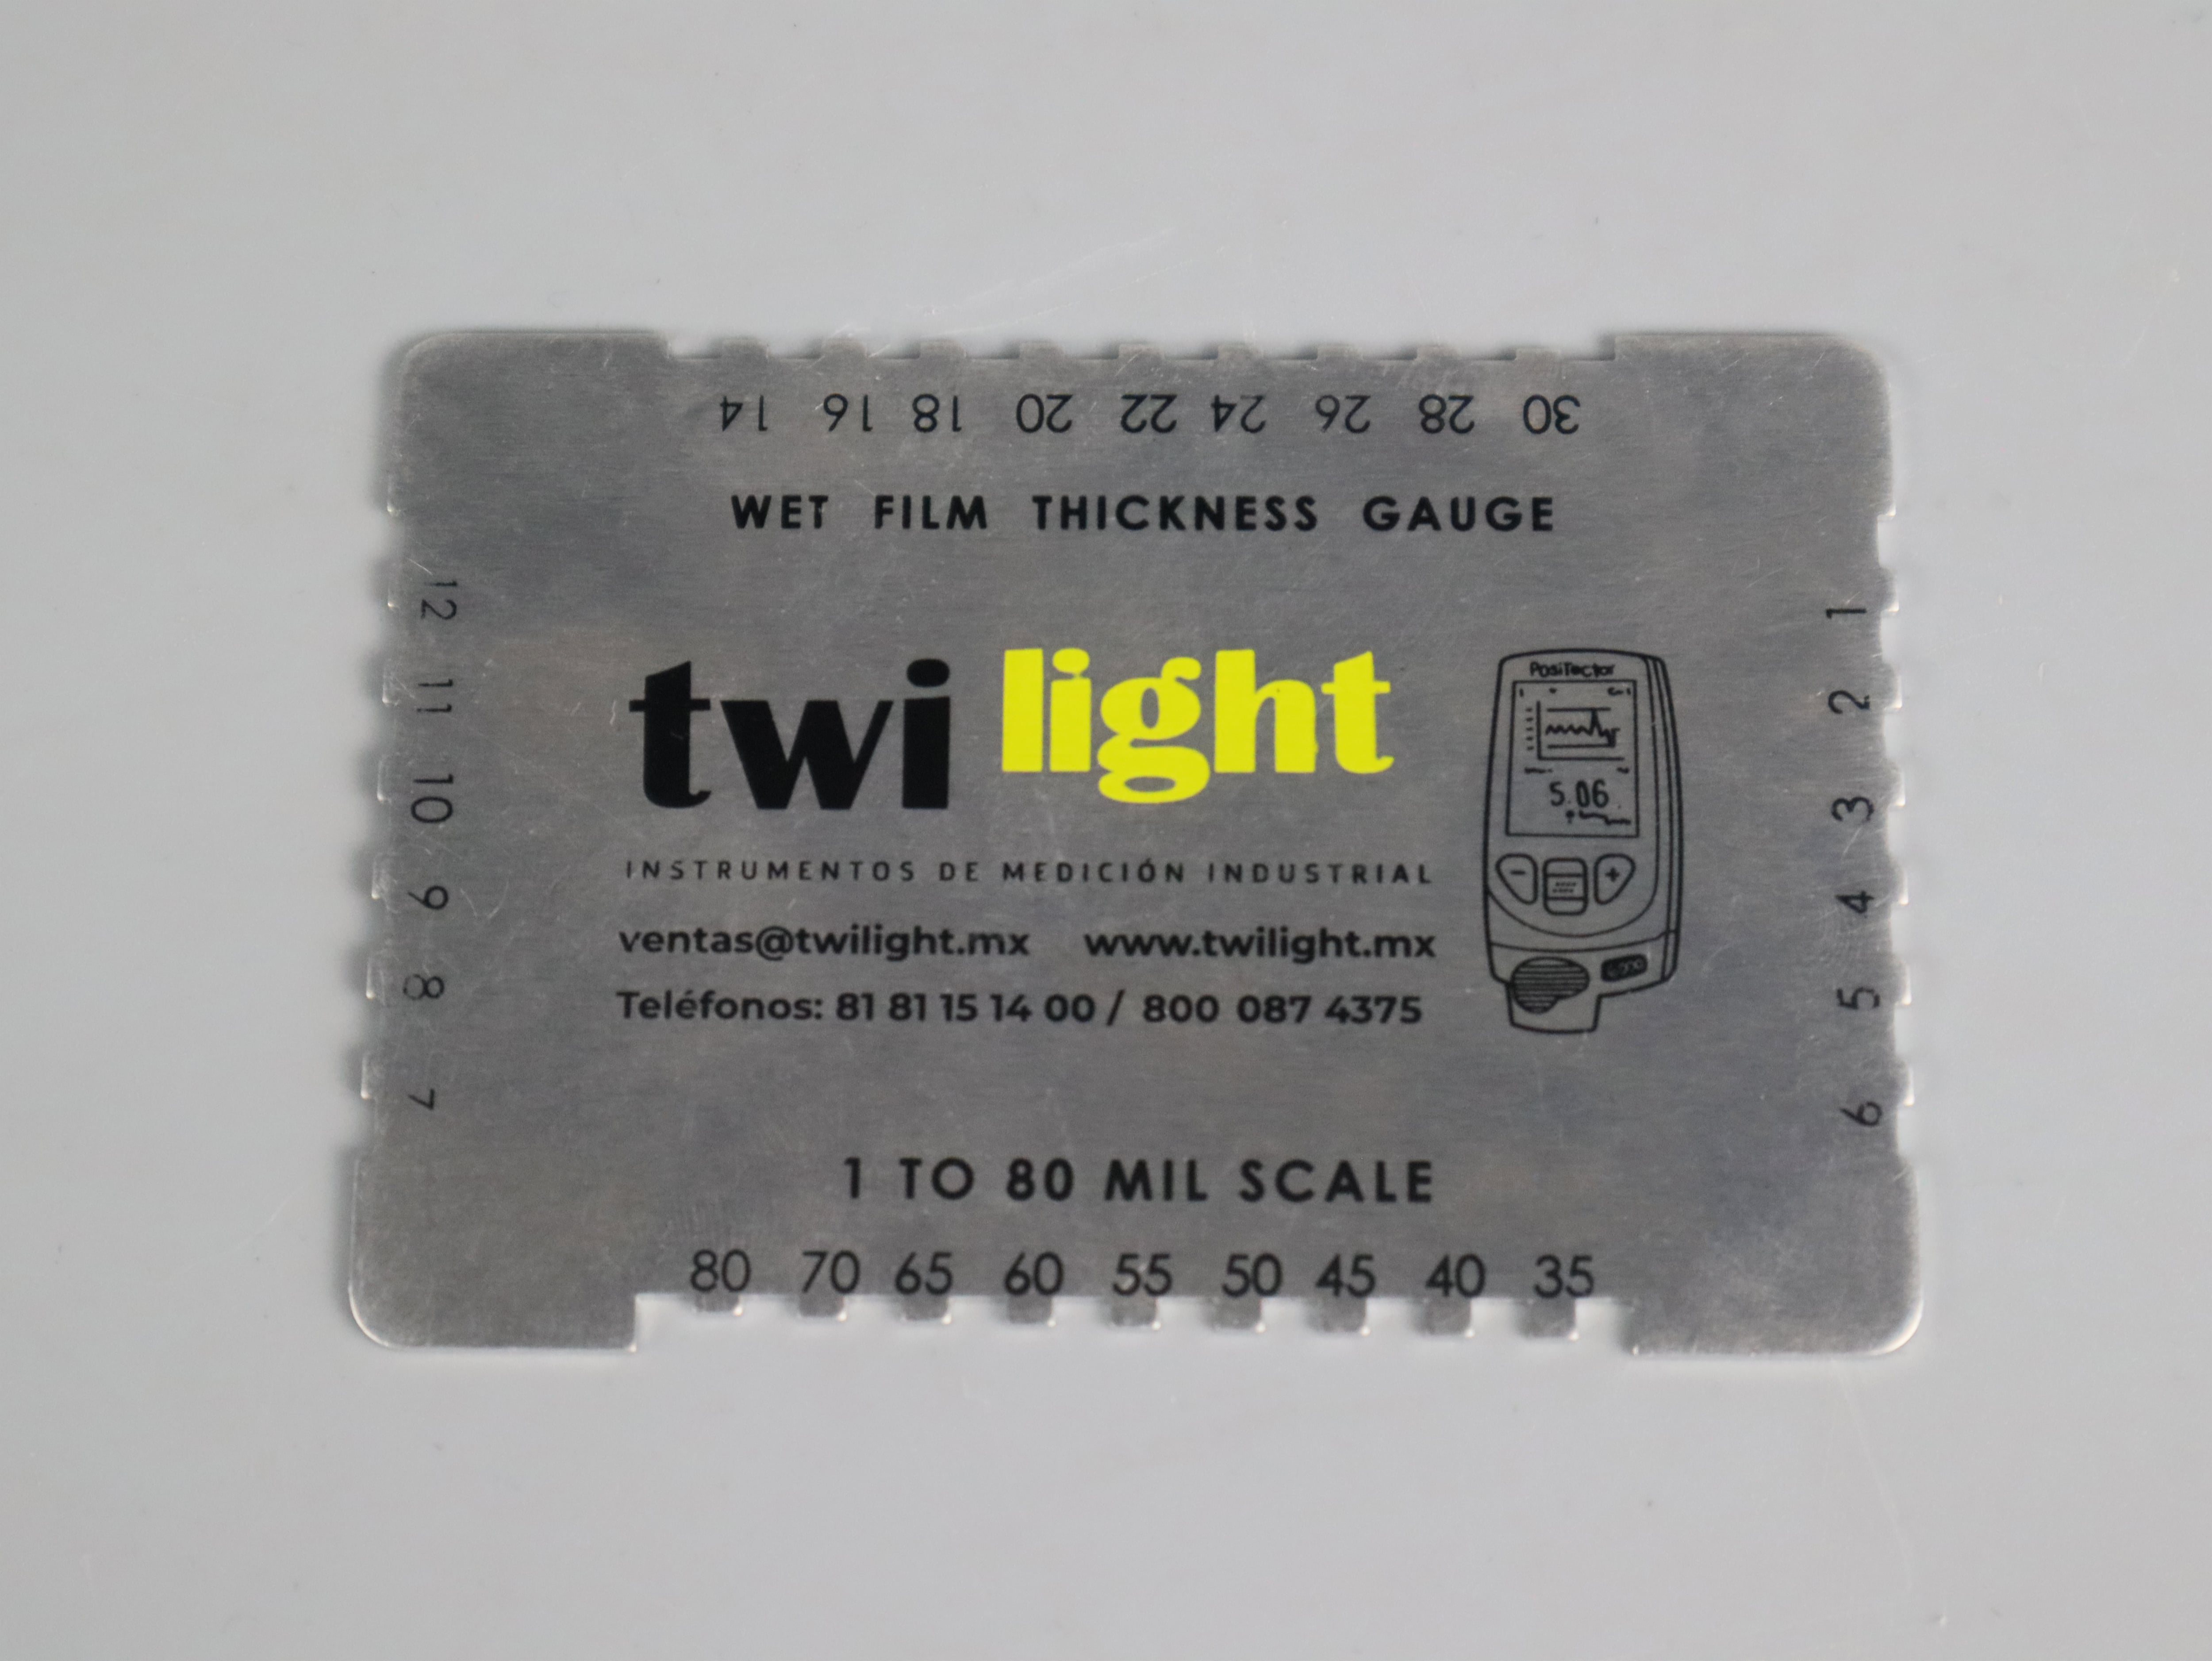 ZH-WFGR-28-peine-de-espesor-hu-medo-de-aluminio-logotipo-twilight-rango-1-80-mils-zh-1-min-jpg